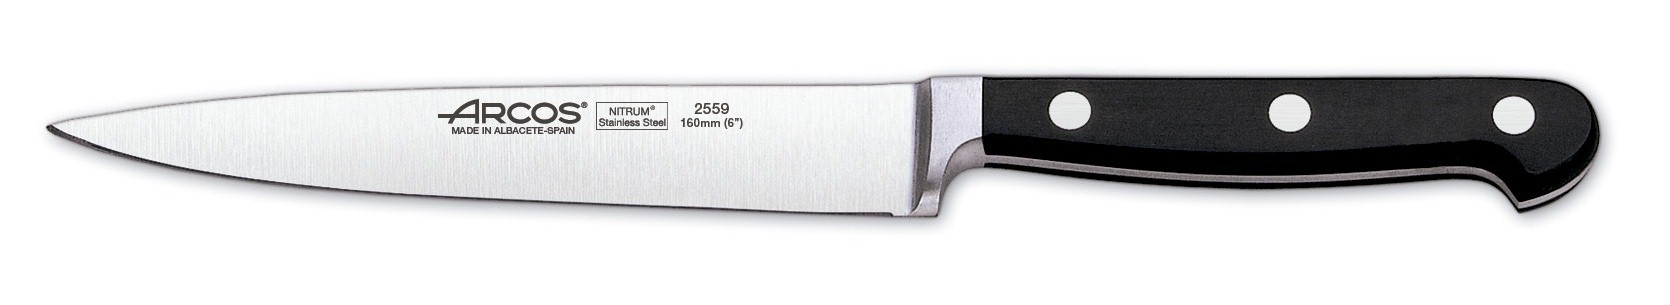 סכין פילה ארקוס 16 ס"מ דגם 2559 - Arcos